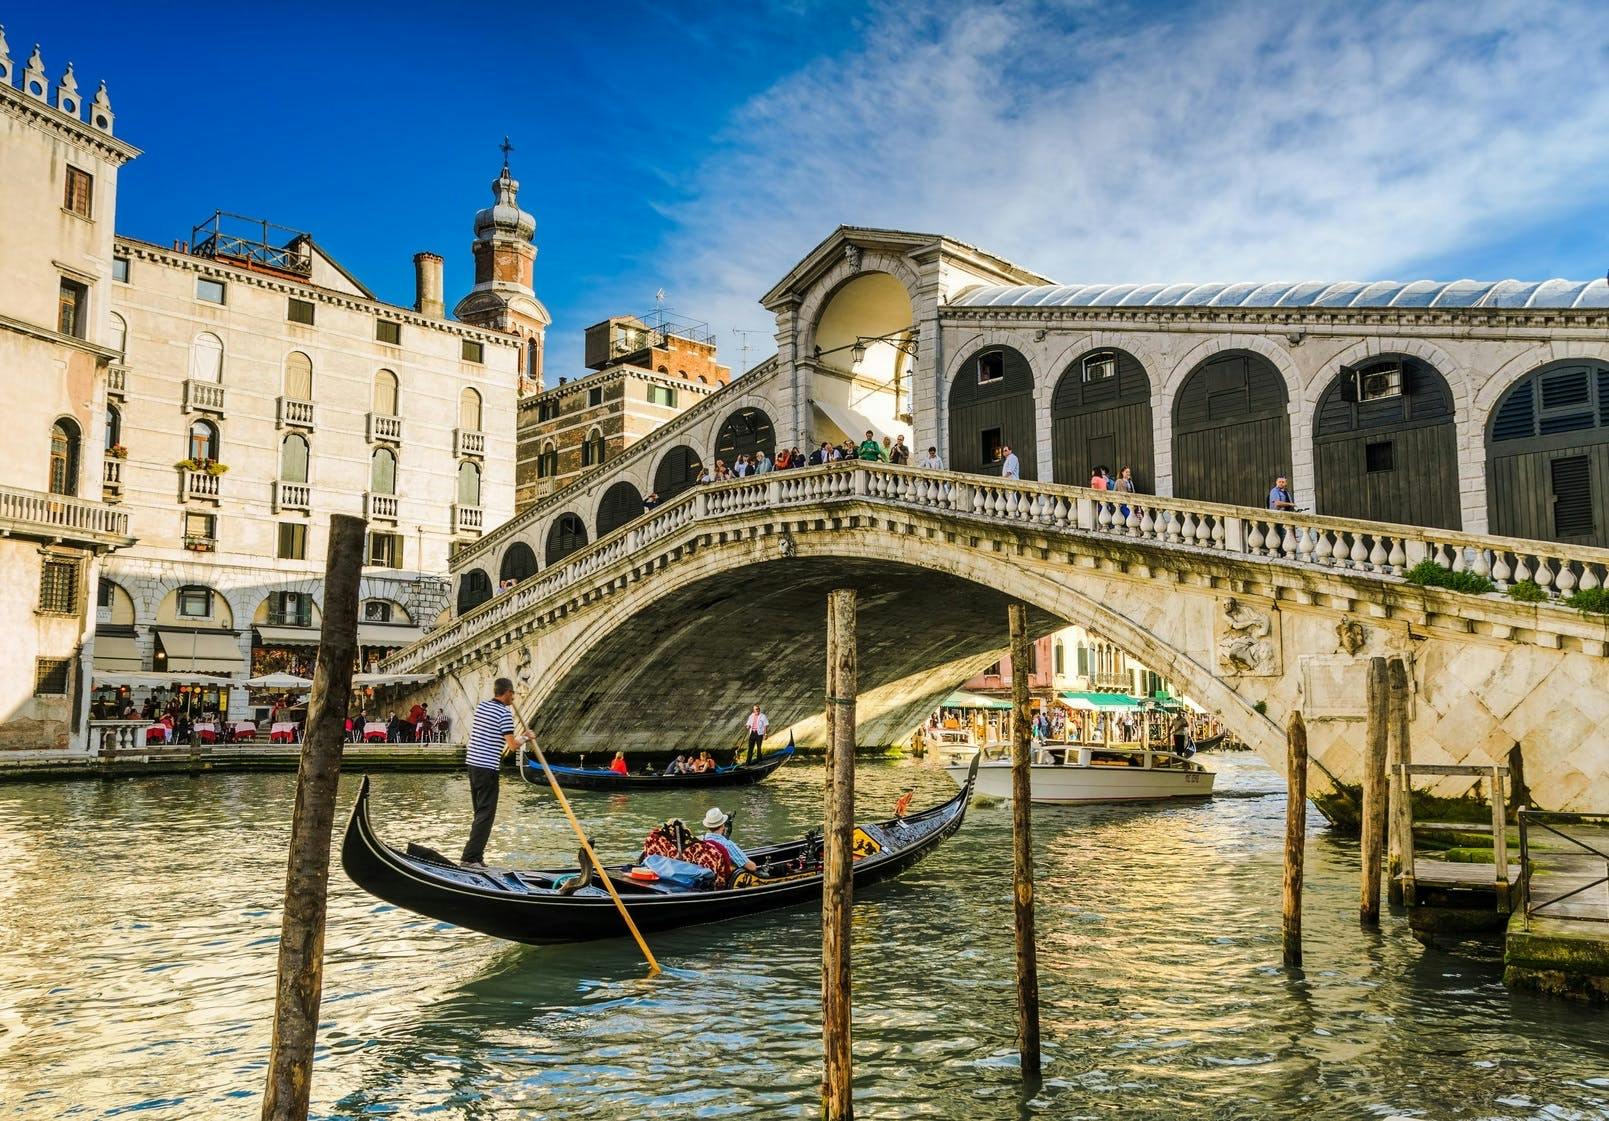 Giro in gondola a Venezia